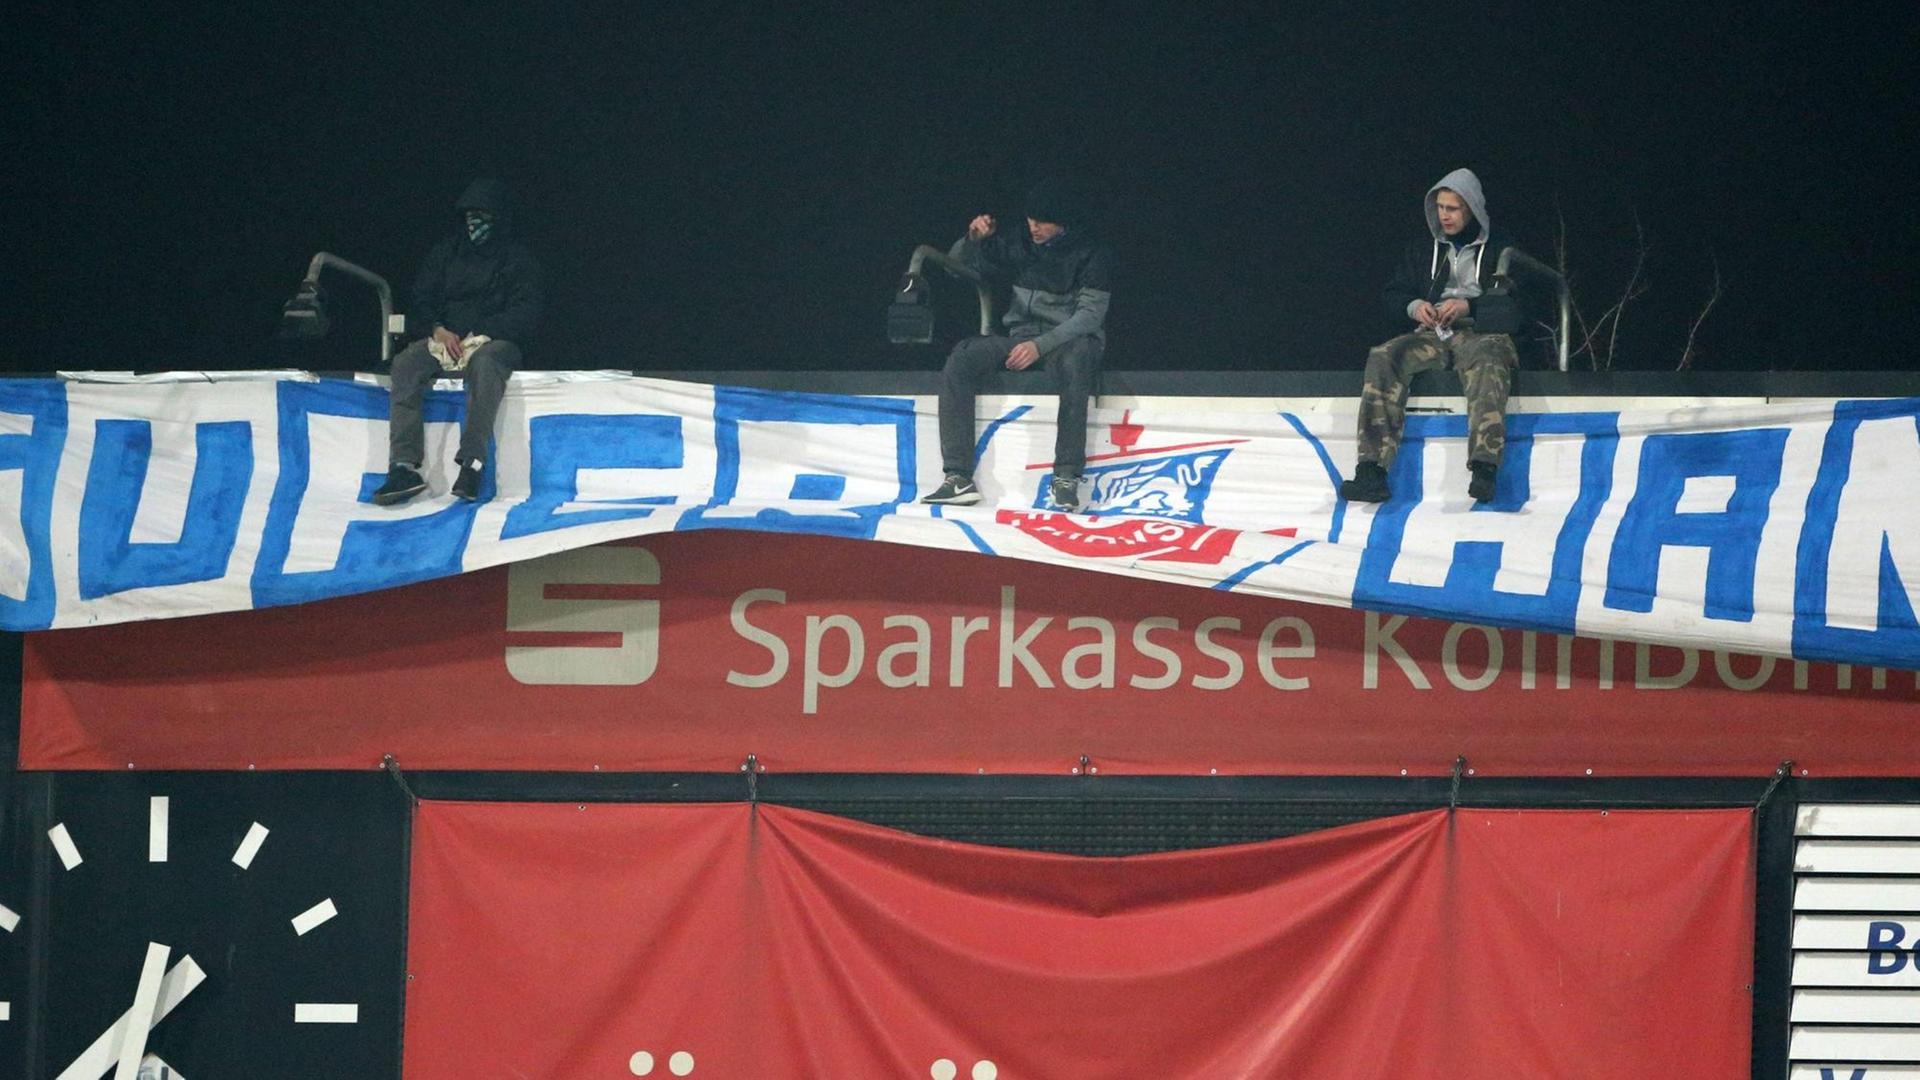 Rostocker Fans kapern beim Spiel im Kölner Südstadion eine Anzeigetafel